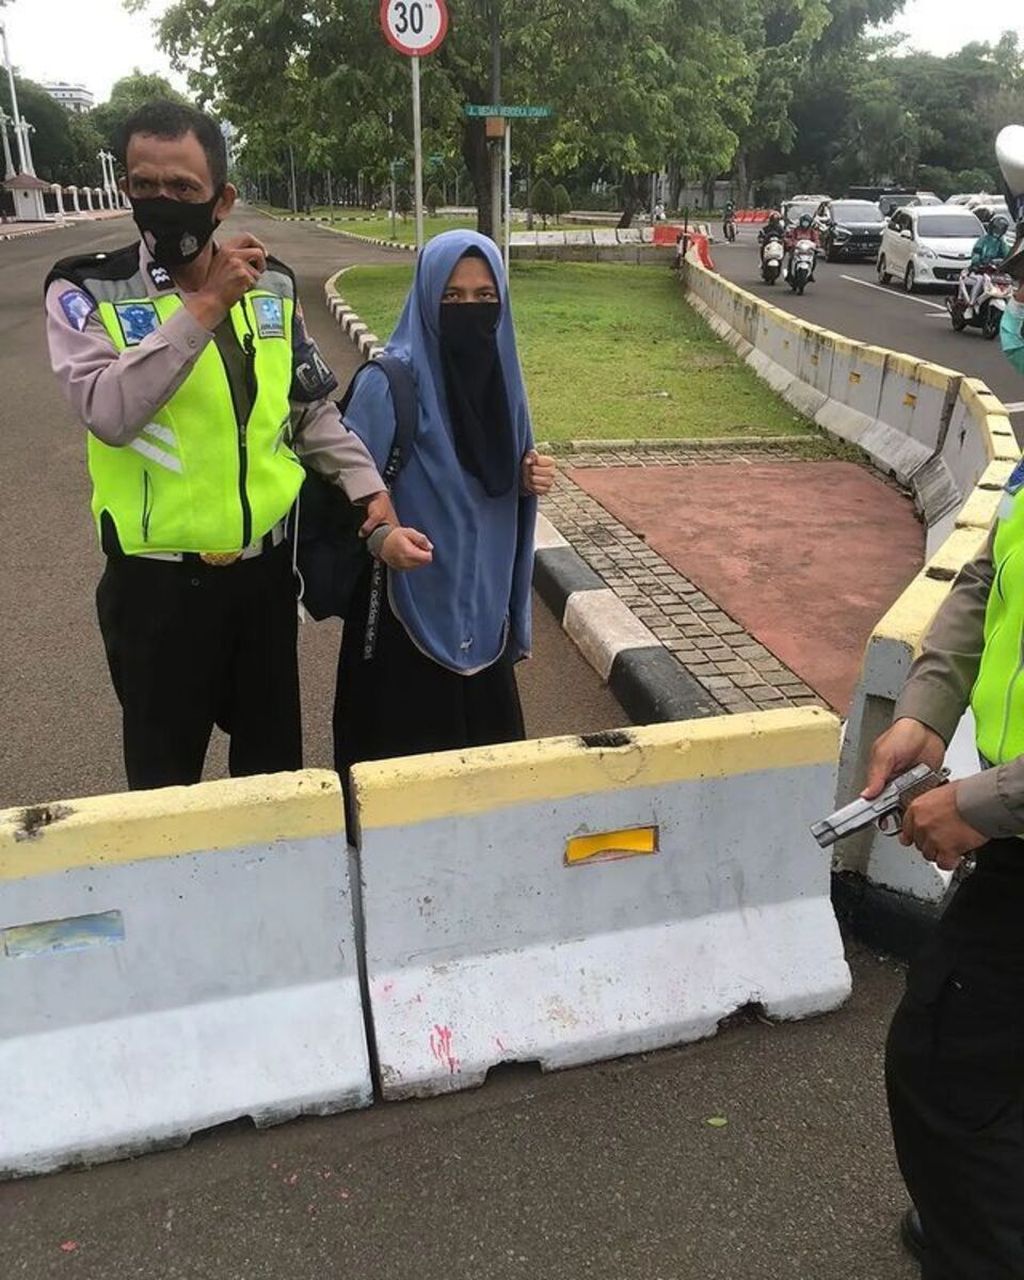 Anggota polisi lalu lintas yang sedang melakukan tugas pengamanan rutin di Istana Merdeka, Jakarta, mengamankan seorang perempuan yang menodongkan senjata api kepada petugas Selasa (25/10/2022) pagi.